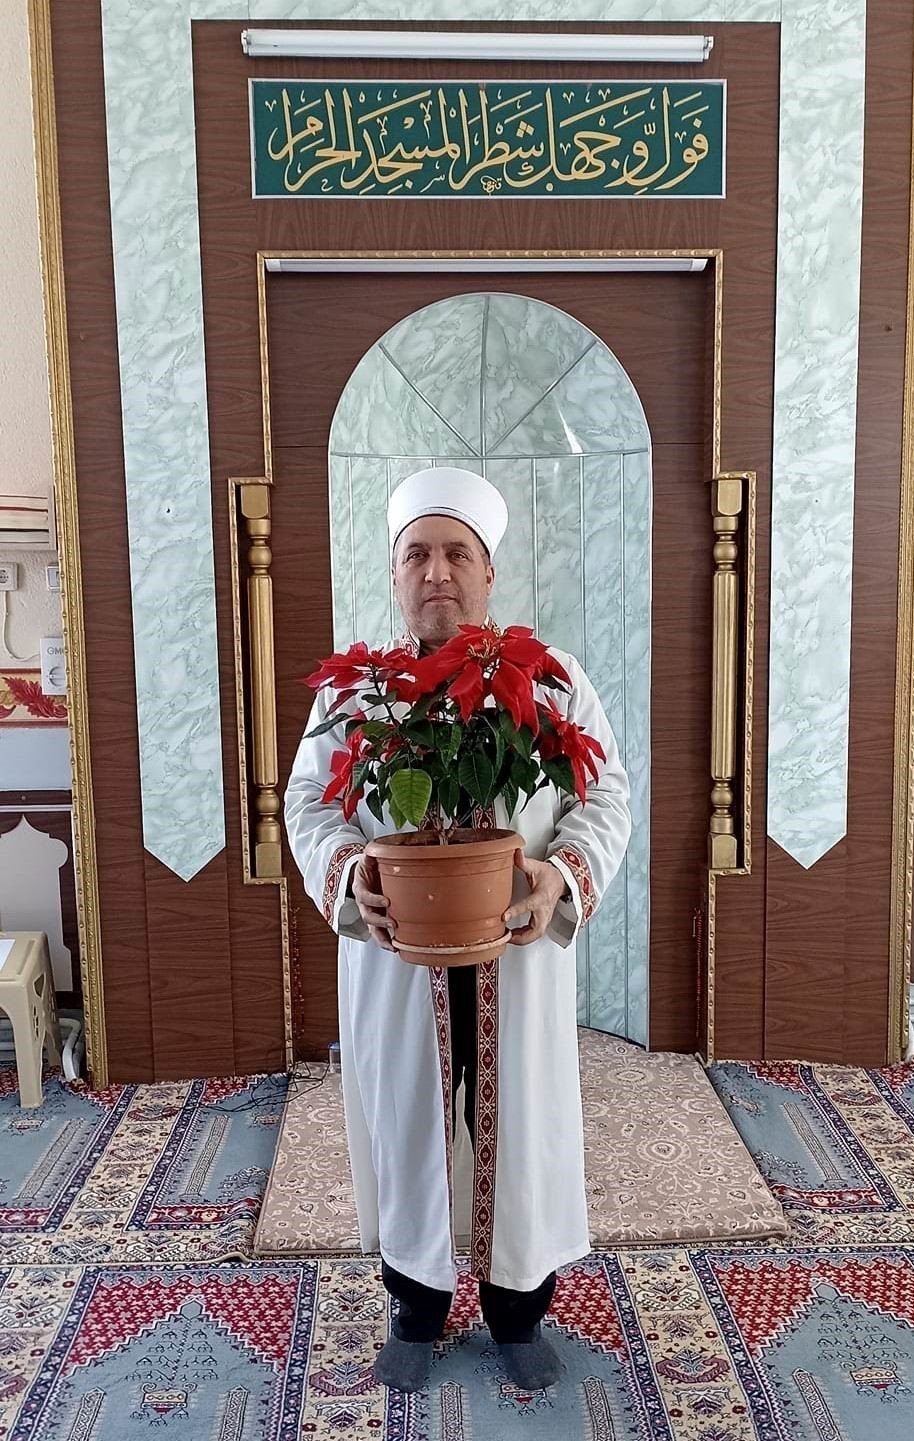 Konya'da imamın '500 liraya satarım' dediği çiçek, 21 bin liraya satıldı!